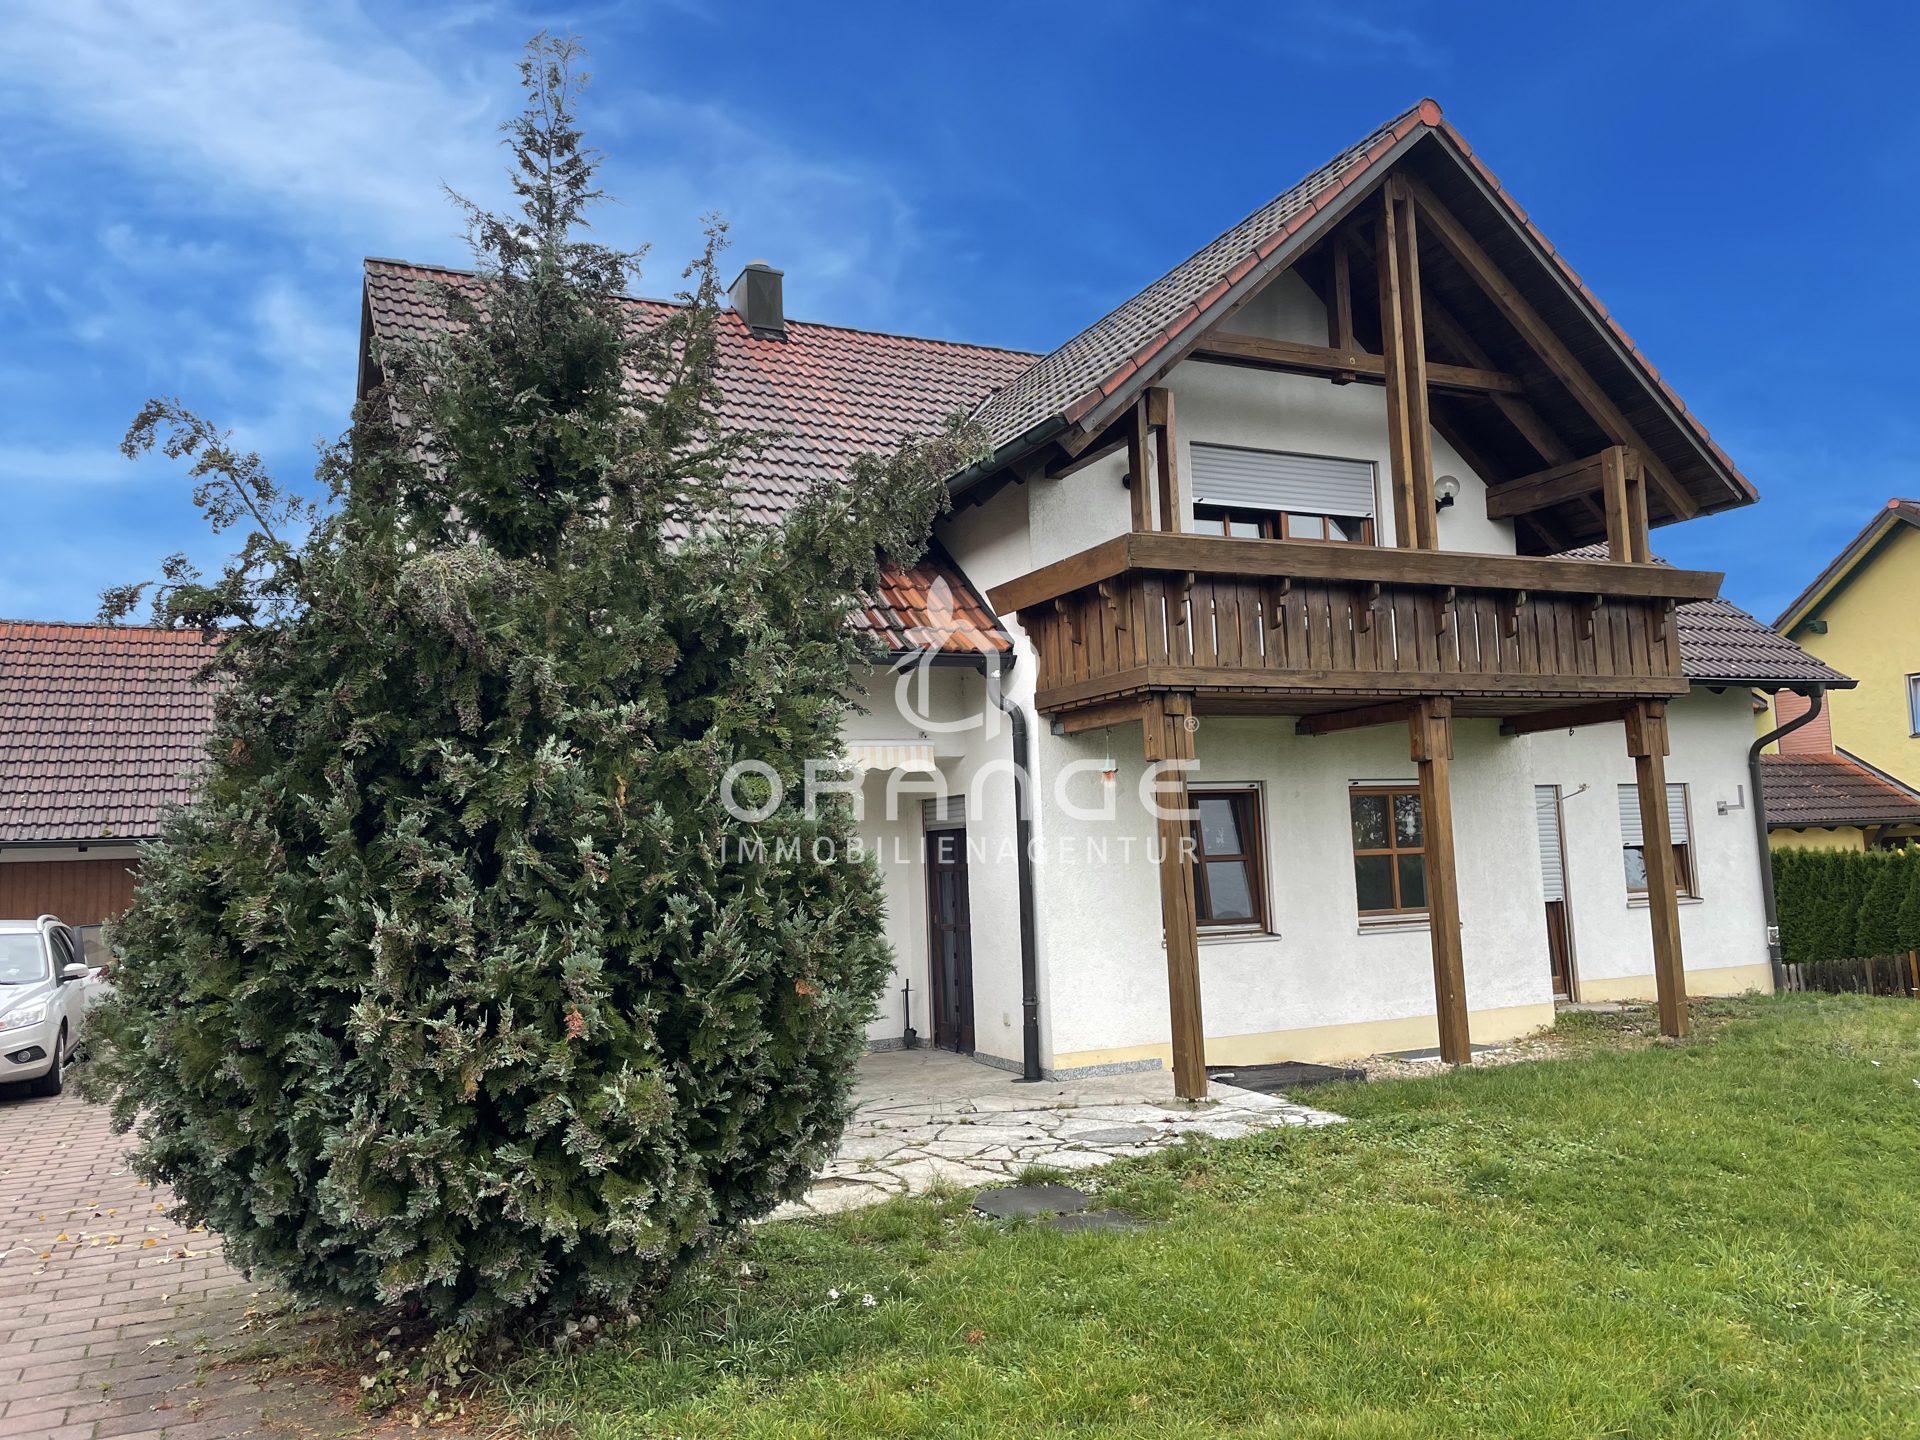 Immobilienangebot - Breitenbrunn - Alle - Großes Zweifamilien,- bzw. Mehrgenerationenhaus sucht neuen Eigentümer